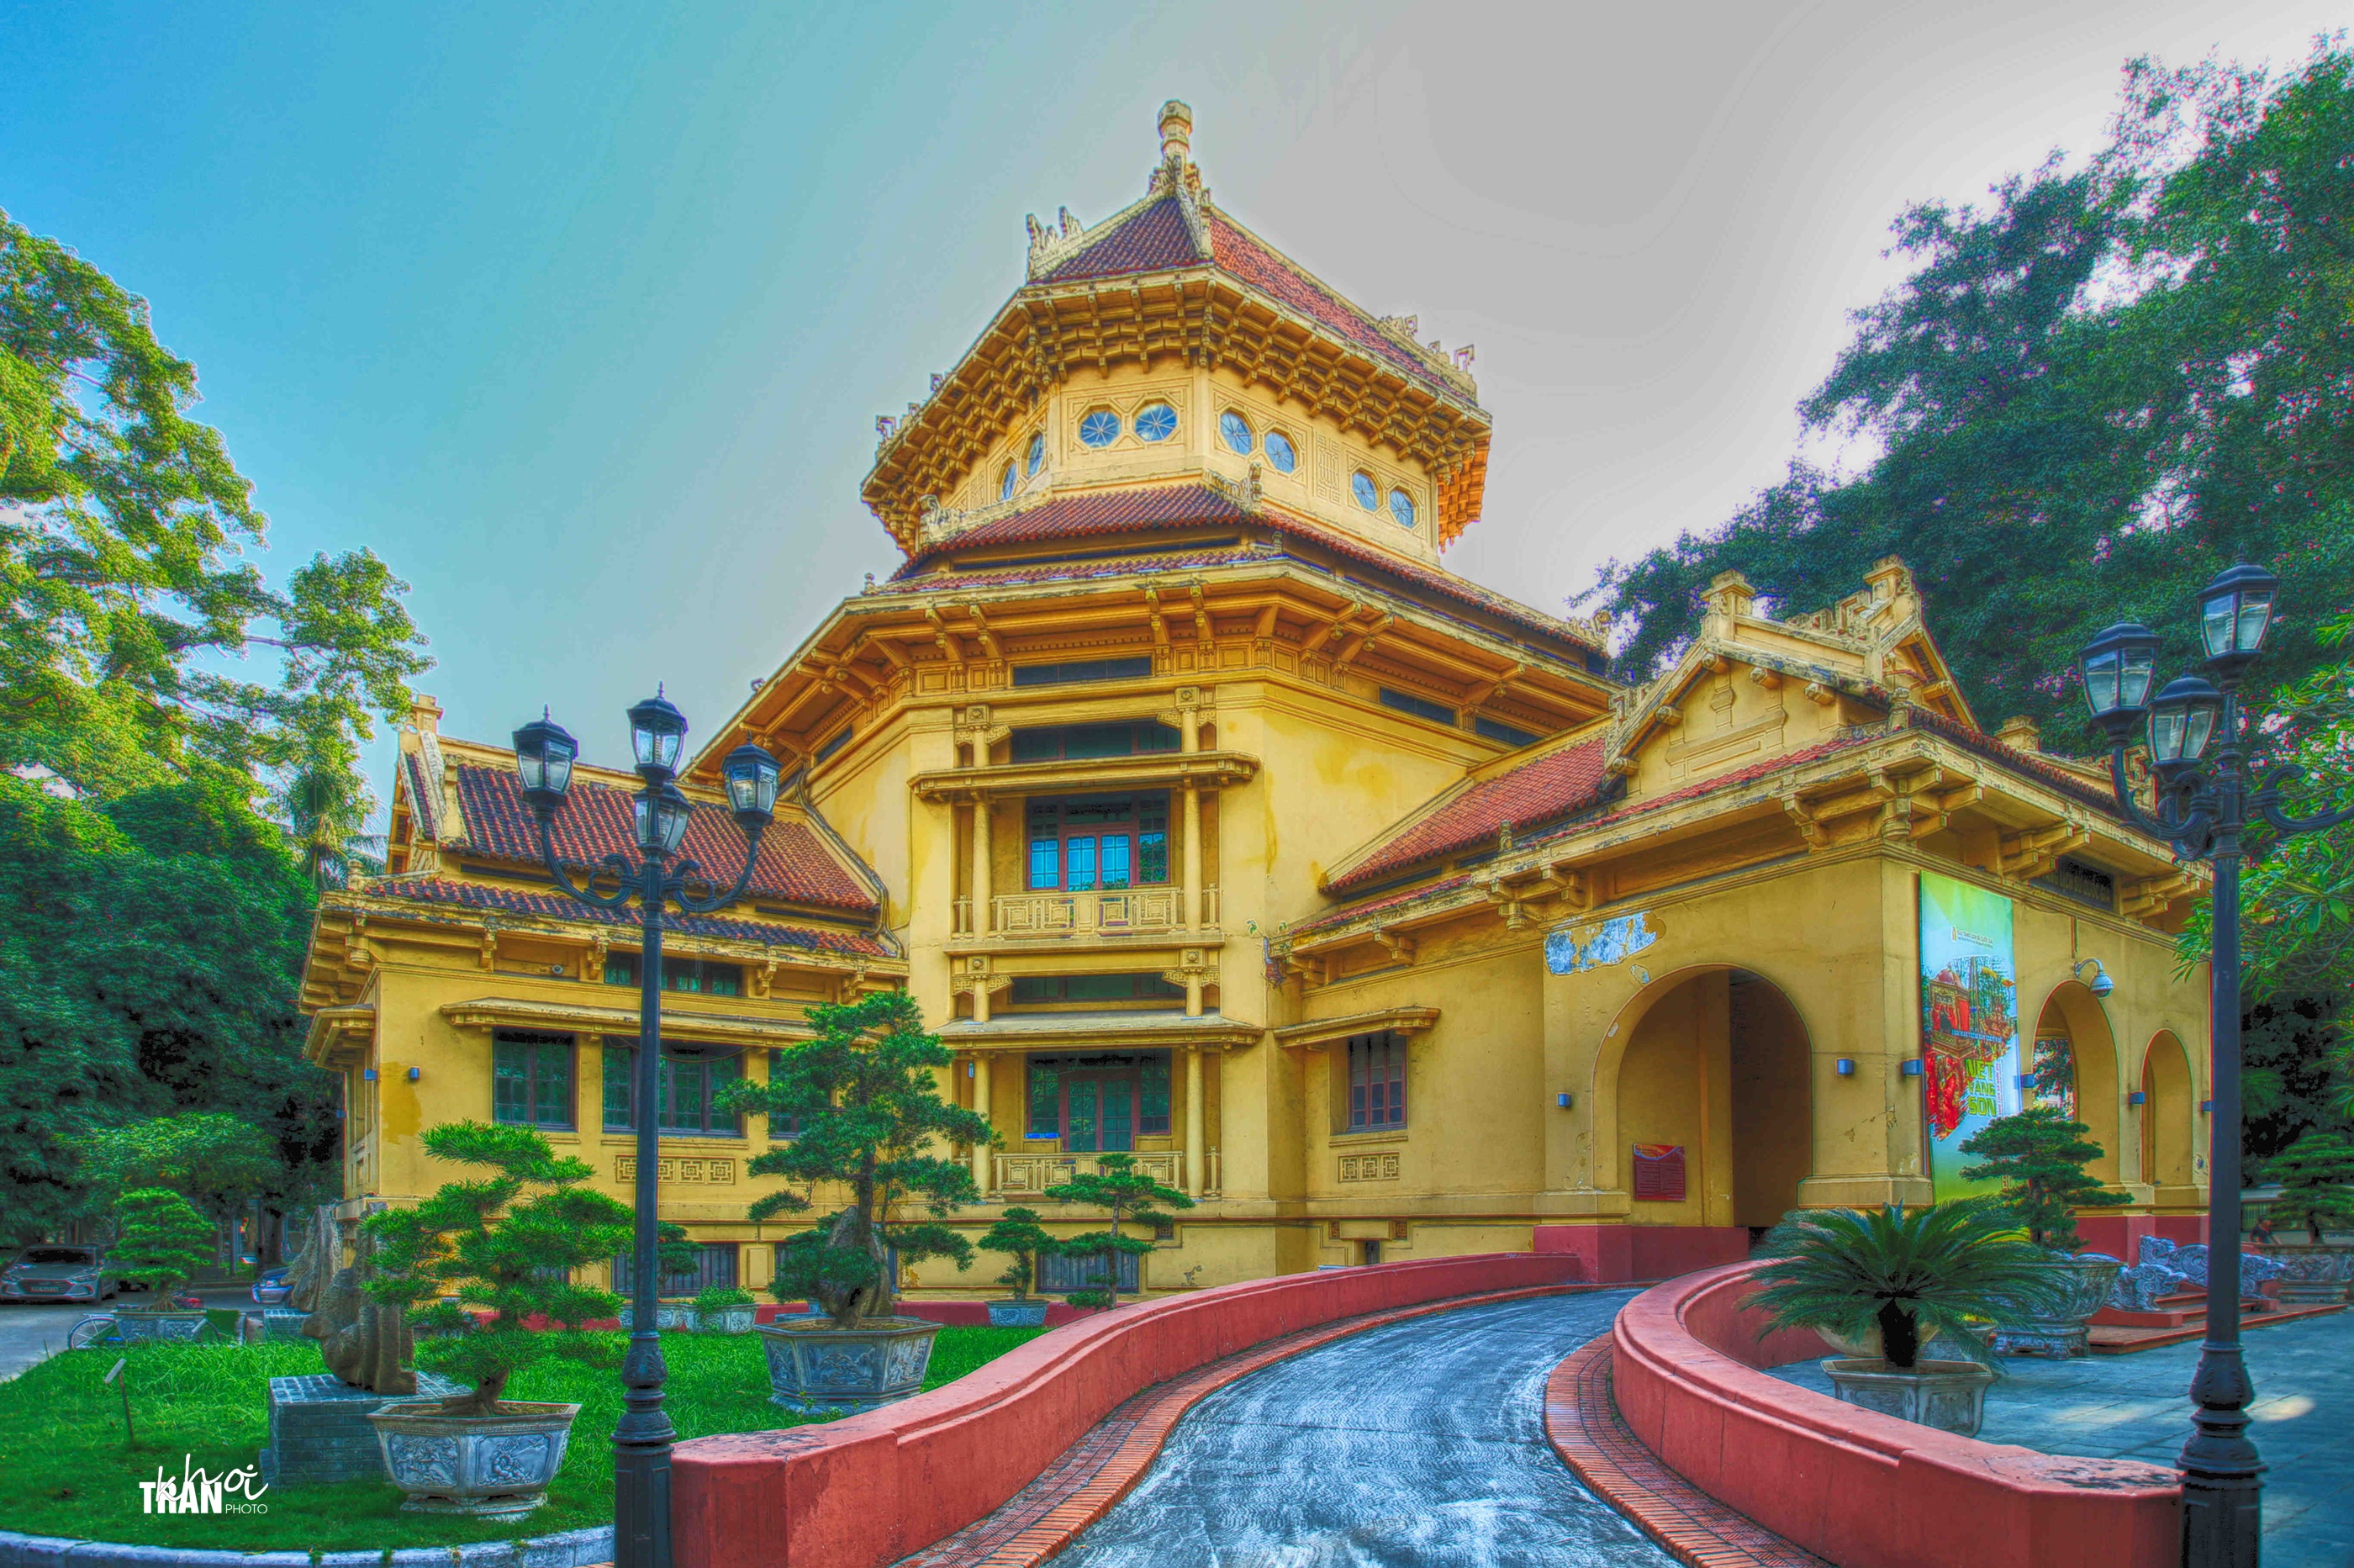 Bảo tàng Lịch sử quốc gia (Việt Nam) – Wikipedia tiếng Việt